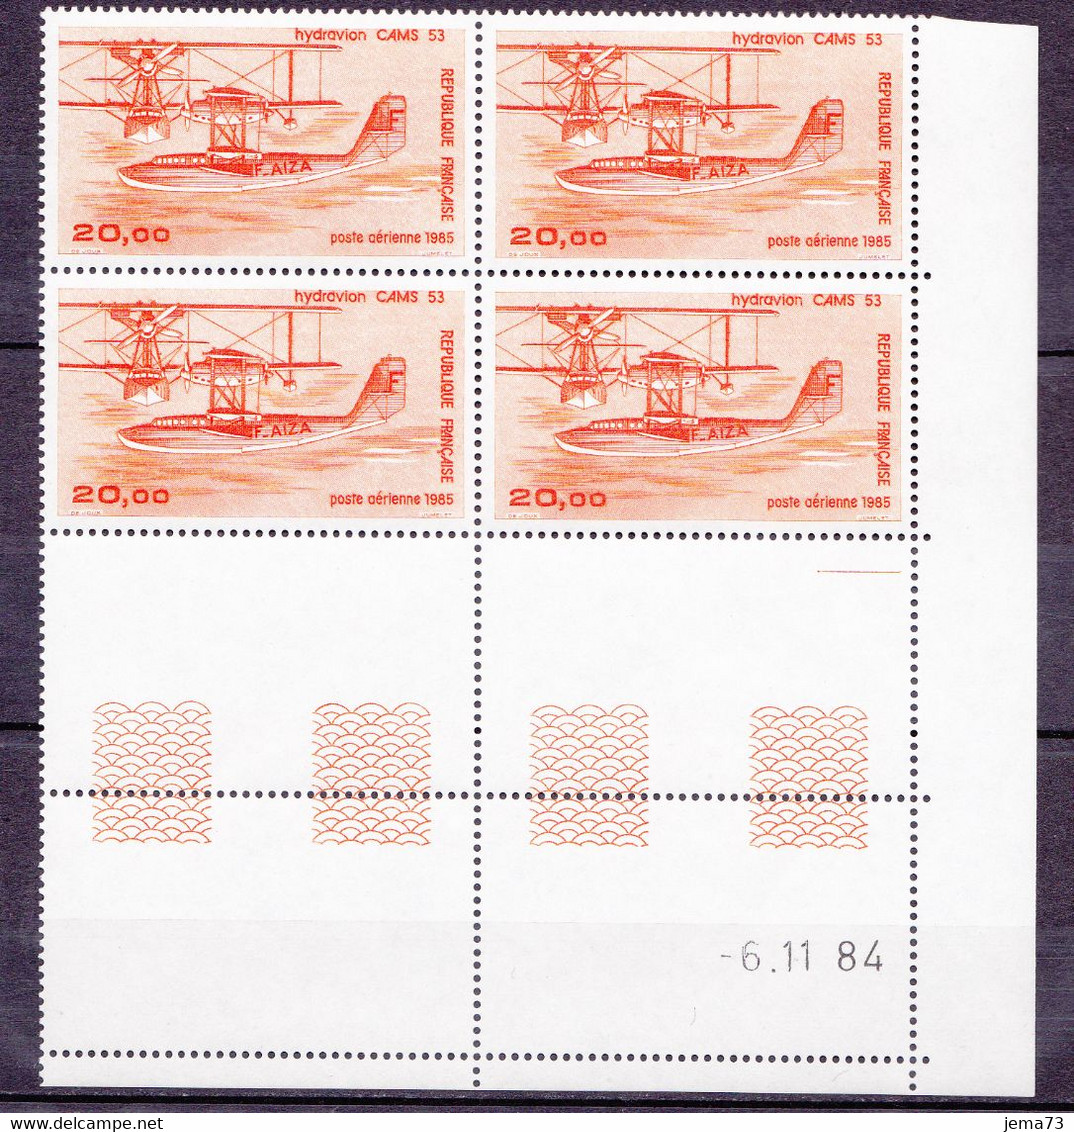 N° 58 Poste Aérienne Hydravion CAMS Bloc Coins Datés 6.11.84 Faire Offre - Airmail